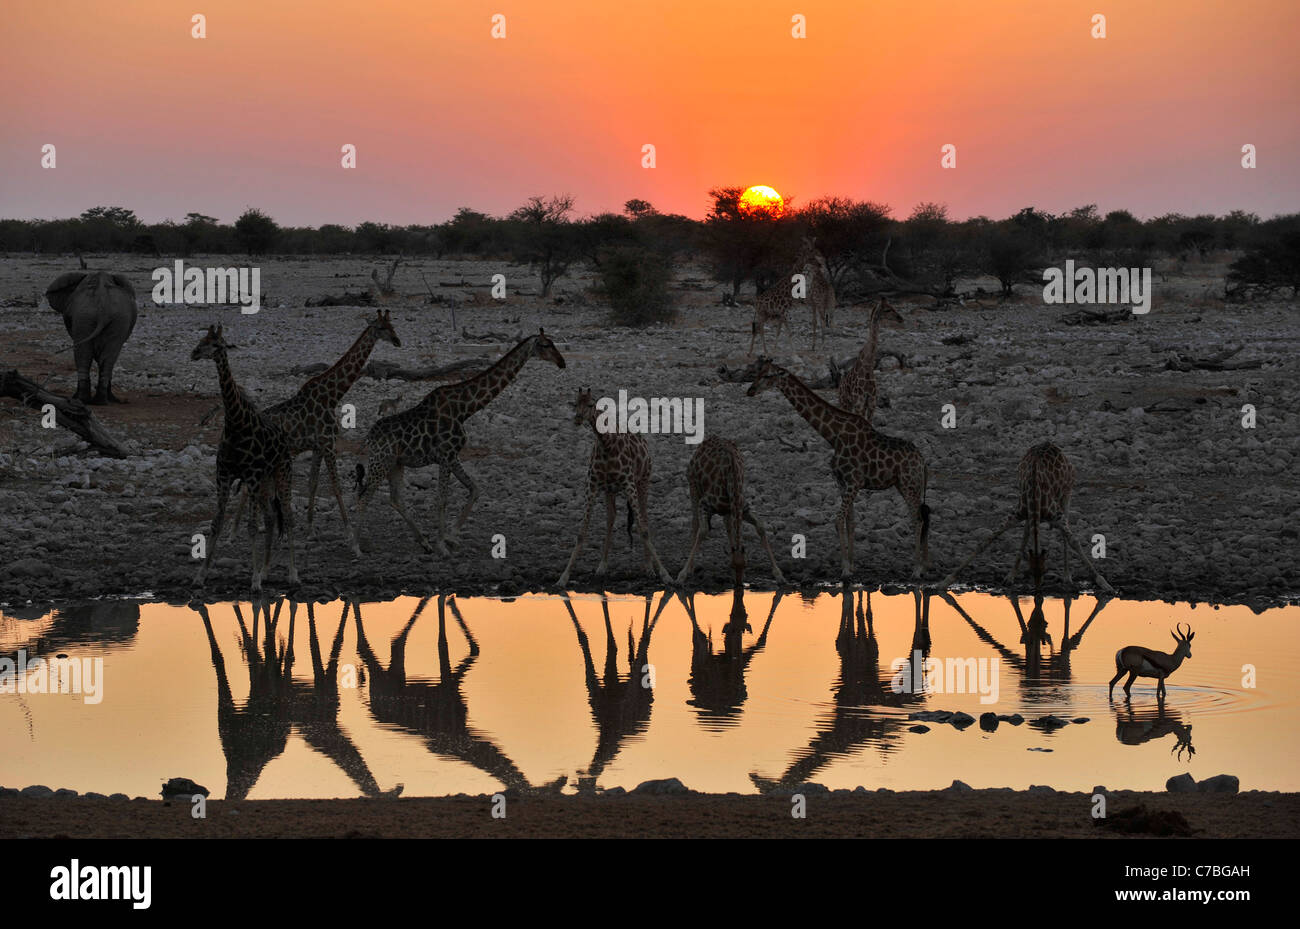 Les Girafes à l'étang au coucher du soleil, Okaukuejo, Etosha National Park, Namibie, Afrique Banque D'Images